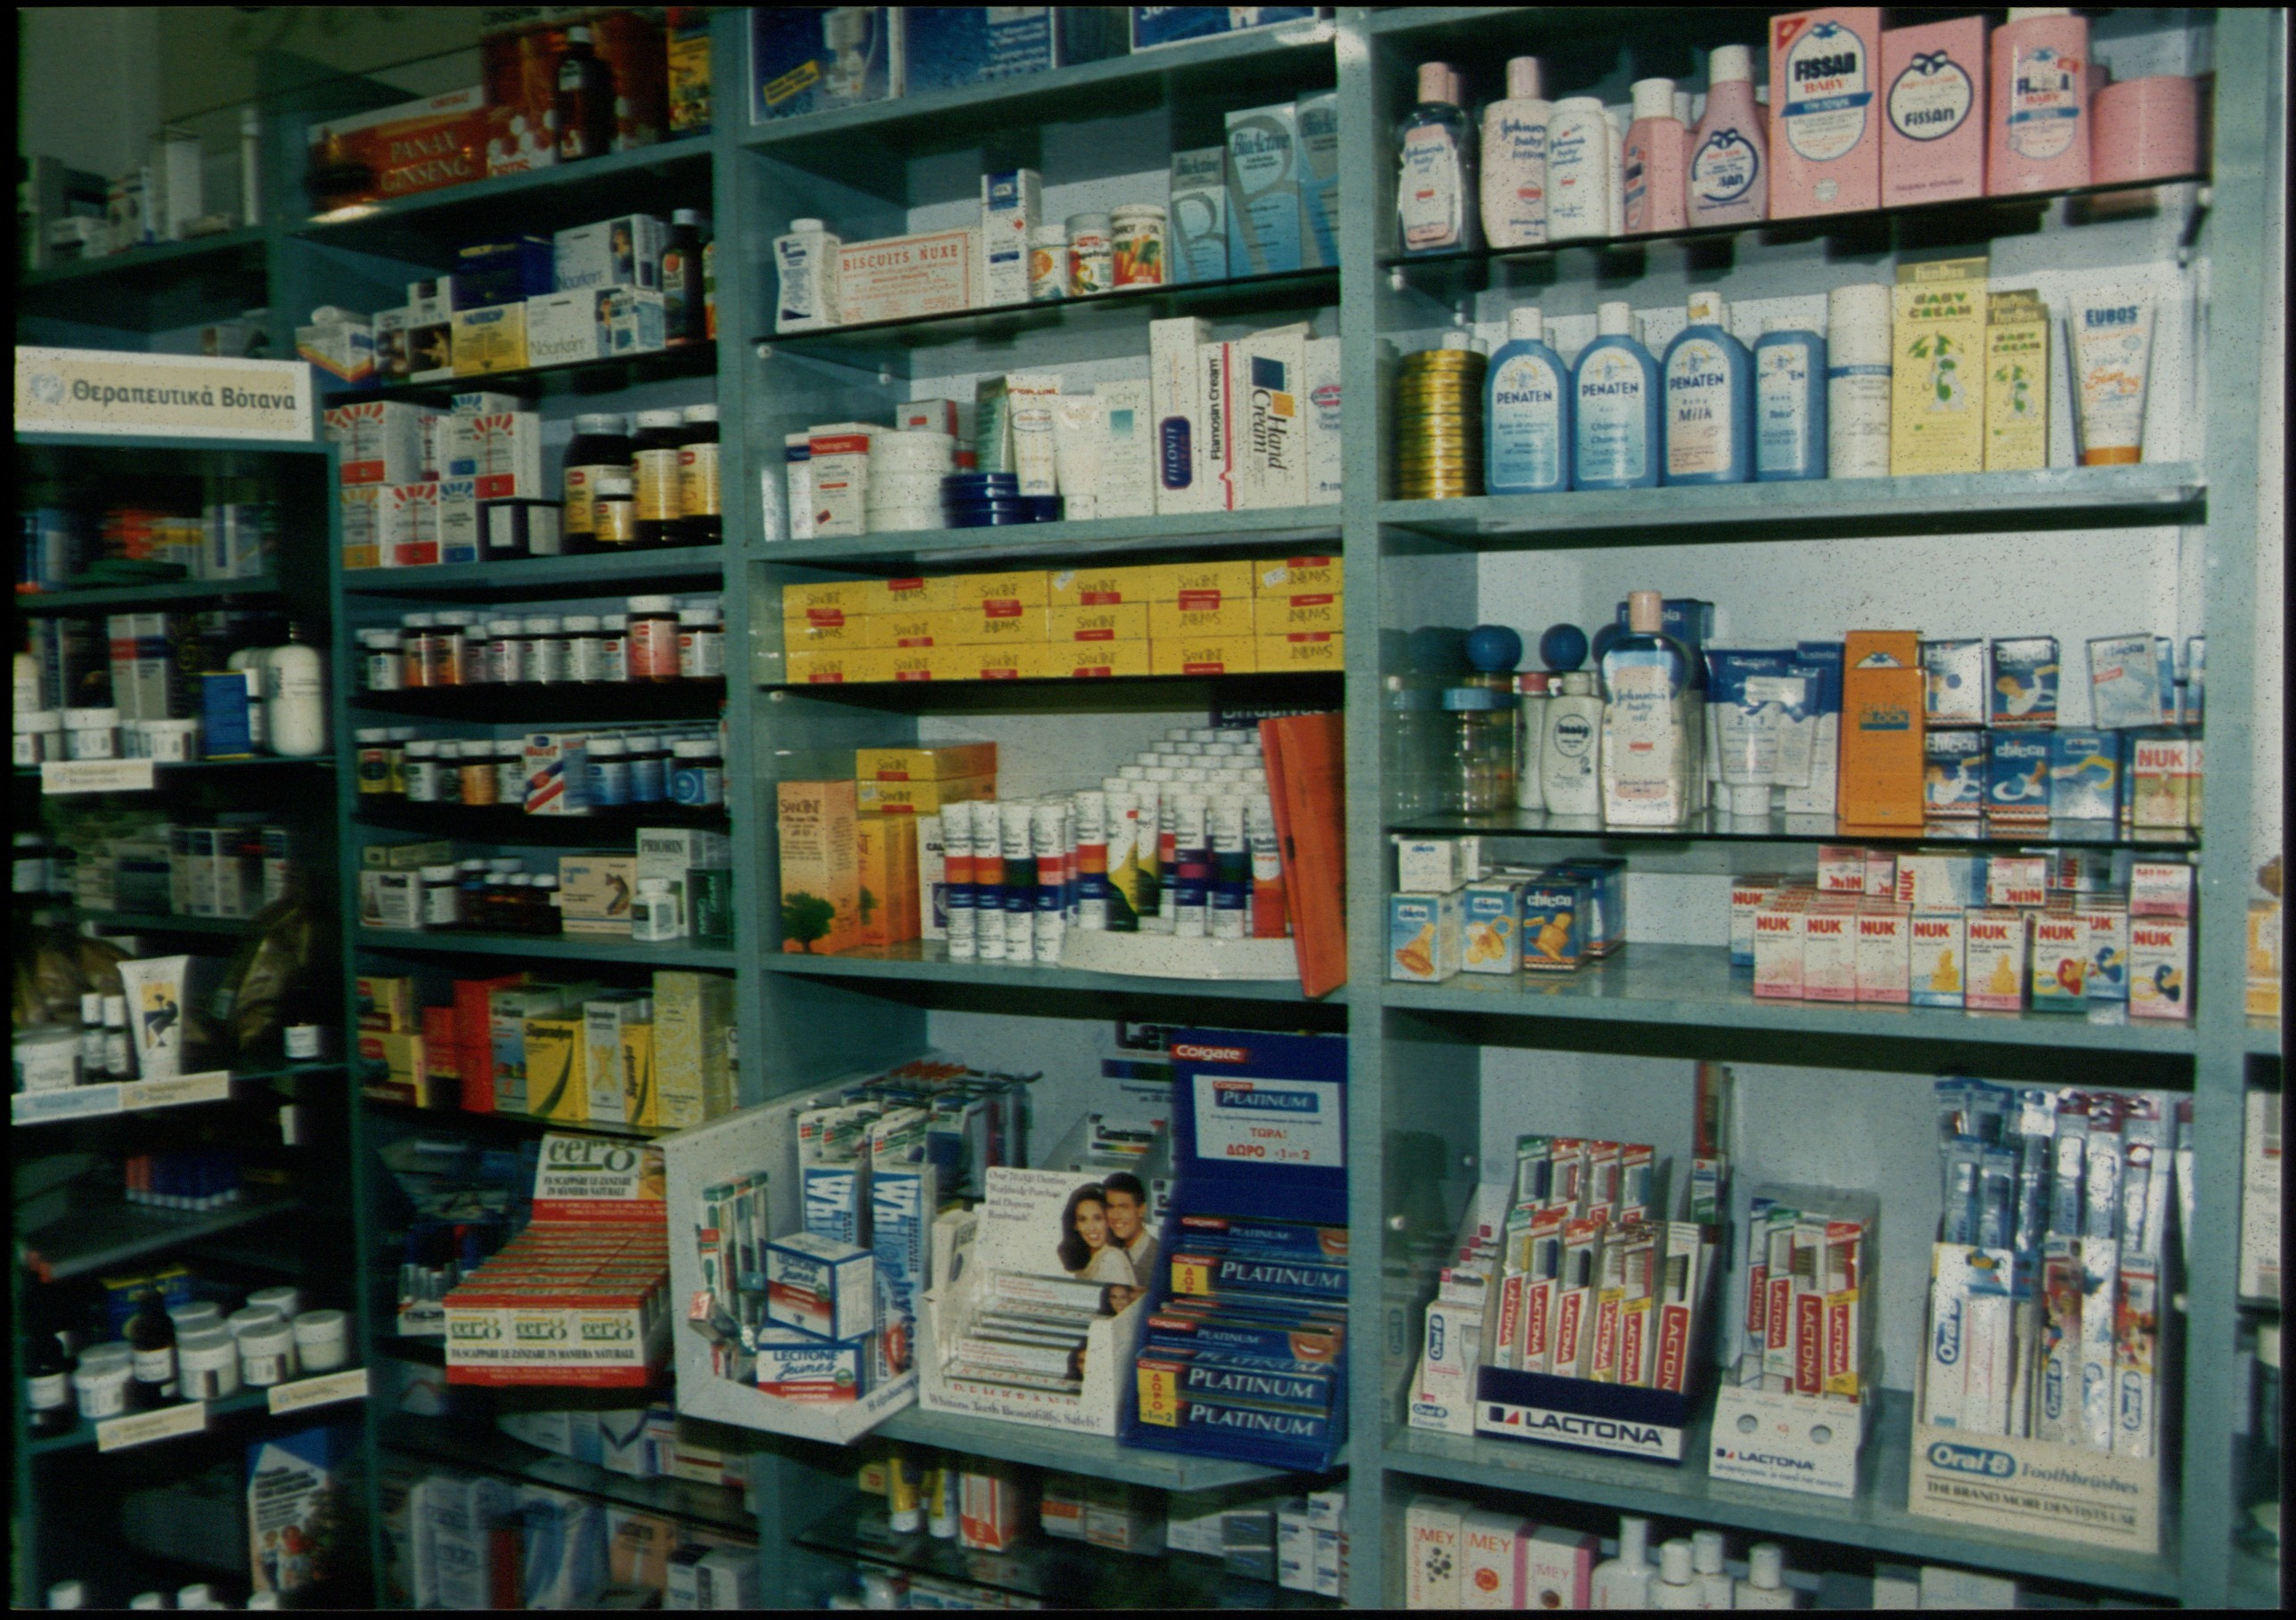 ΕΟΦ:Αυξήσεις 859 φαρμάκων από την ελεύθερη πώληση στα σούπερ μάρκετ